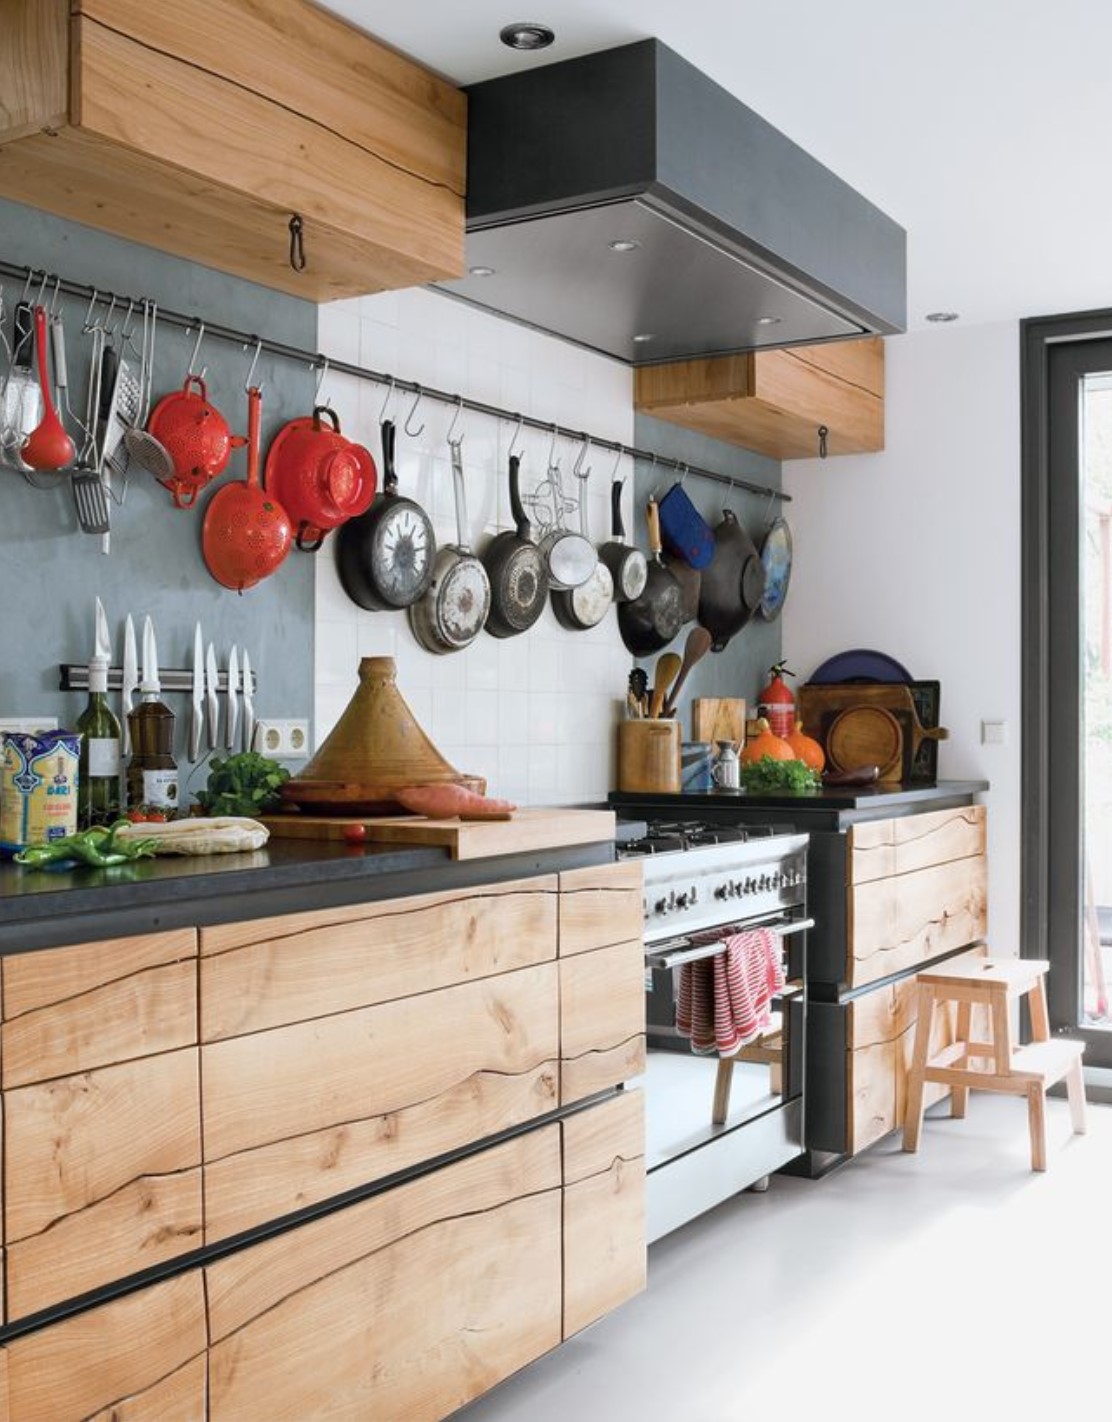 8 kitchen design ideas